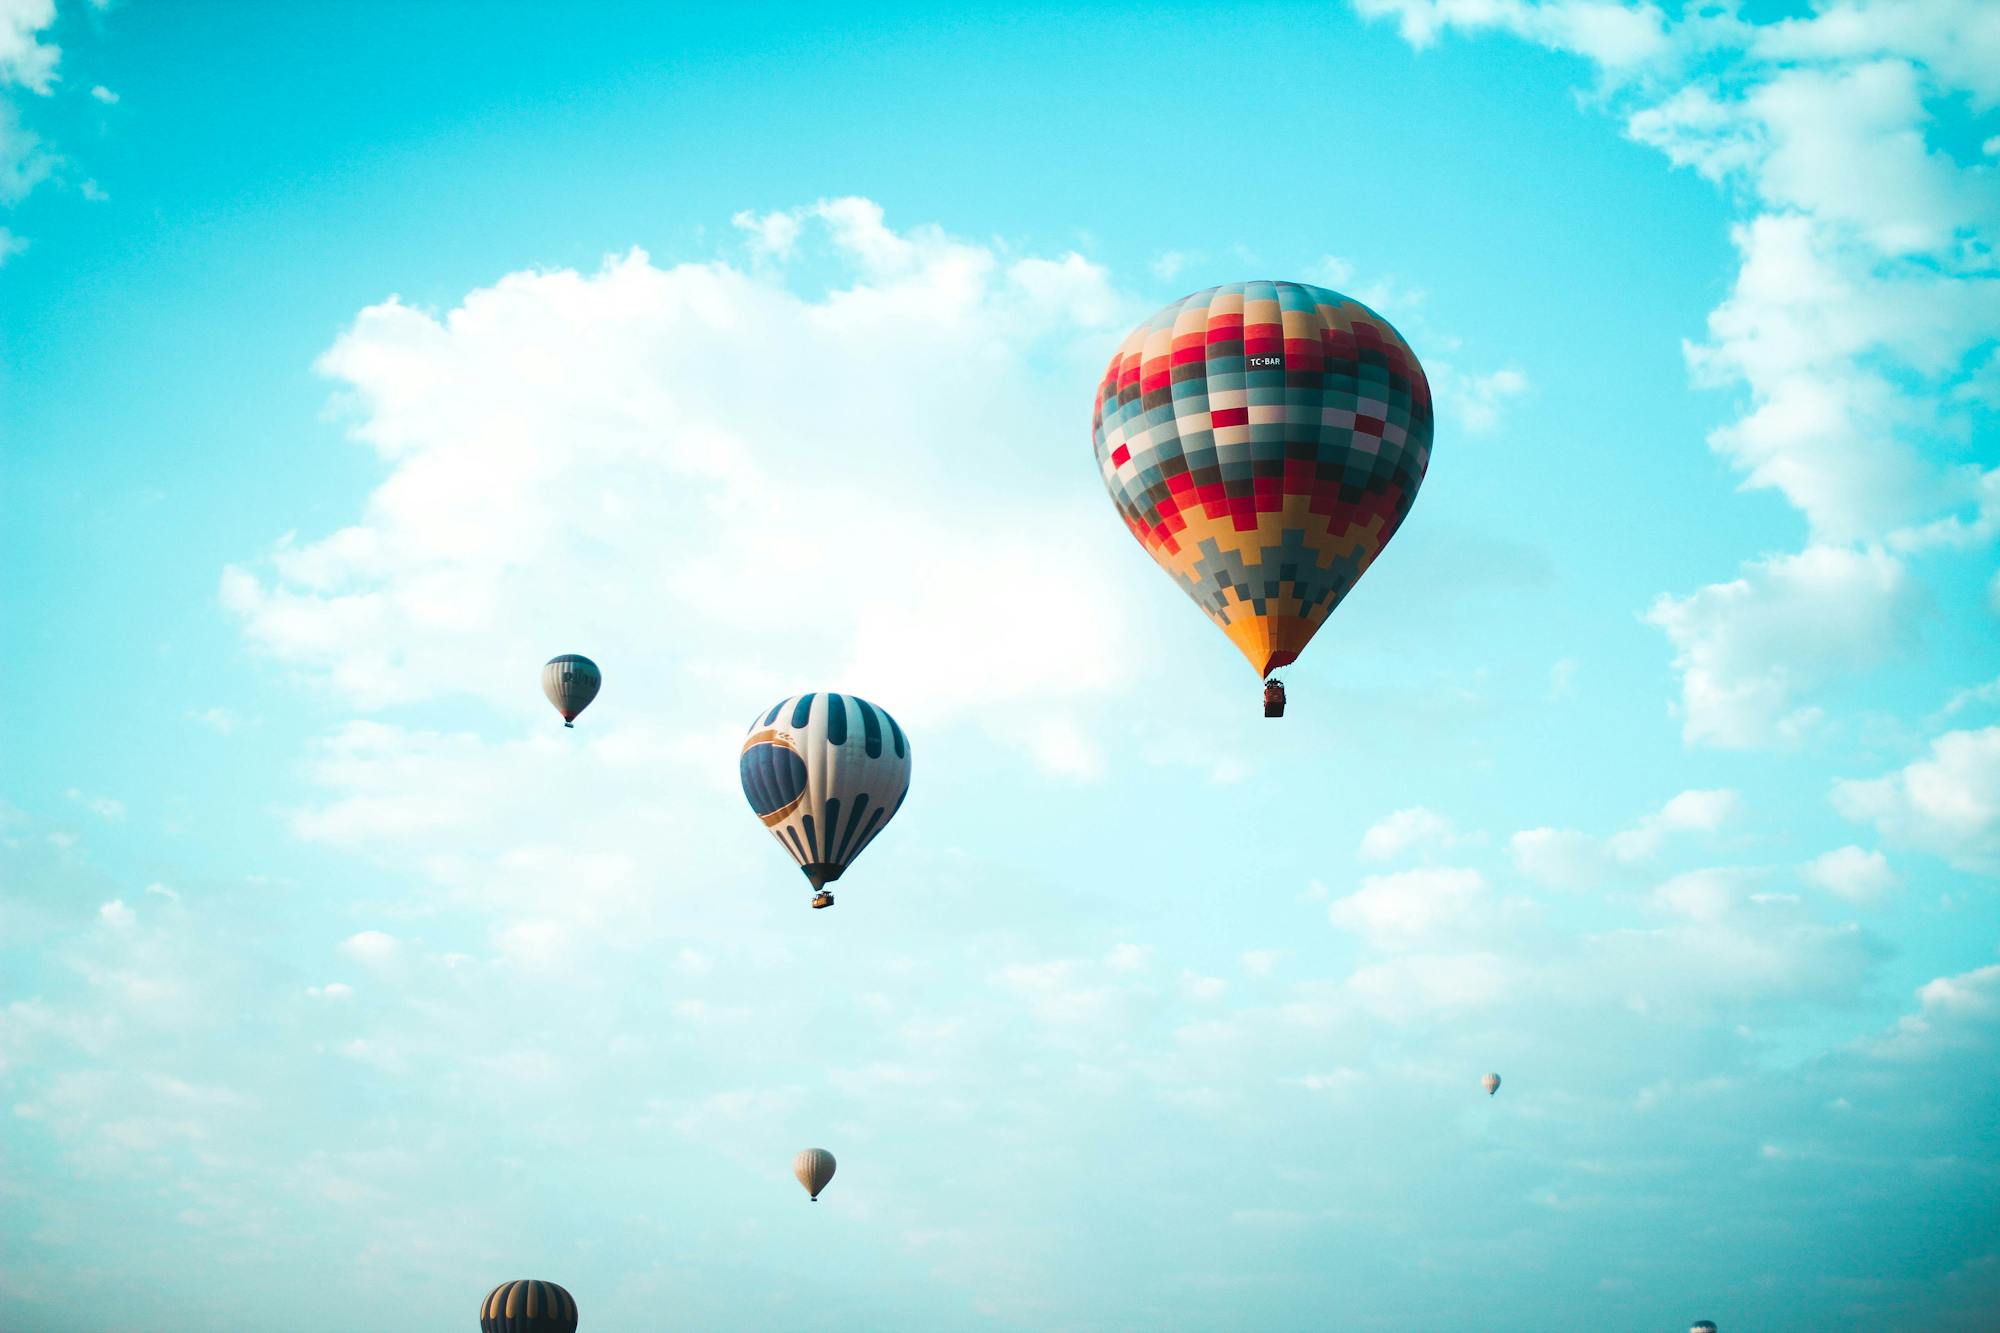 Wiele kolorowych balonów na gorące powietrze unosi się w błękitnym niebie.